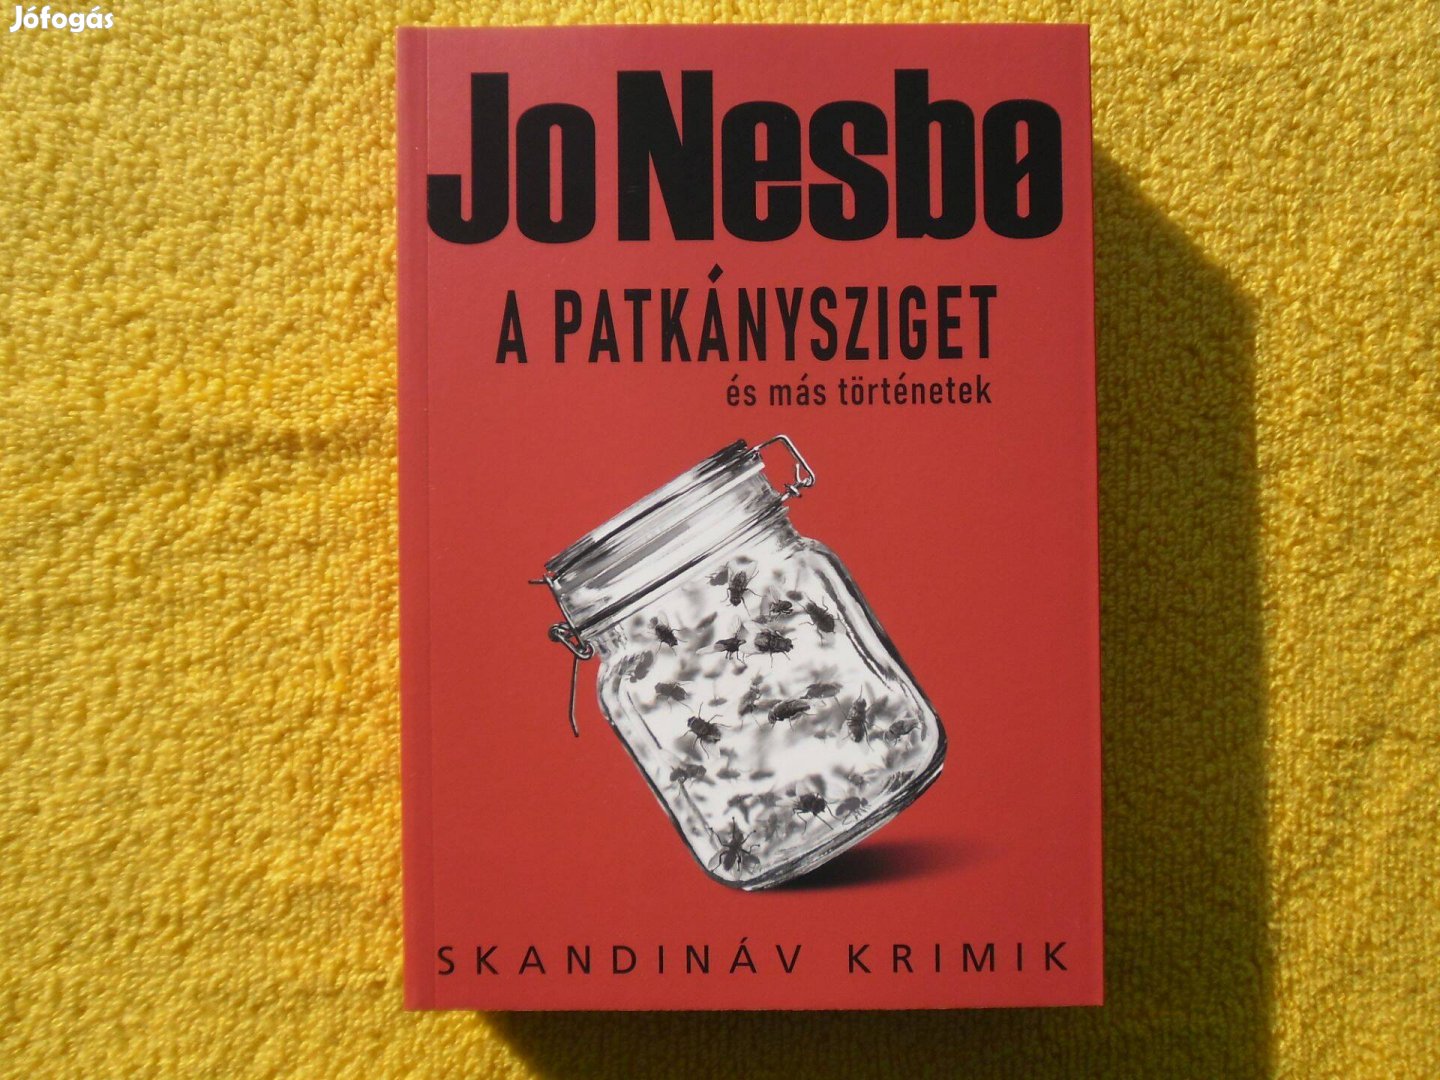 Jo Nesbo: A patkánysziget /Skandináv krimik/